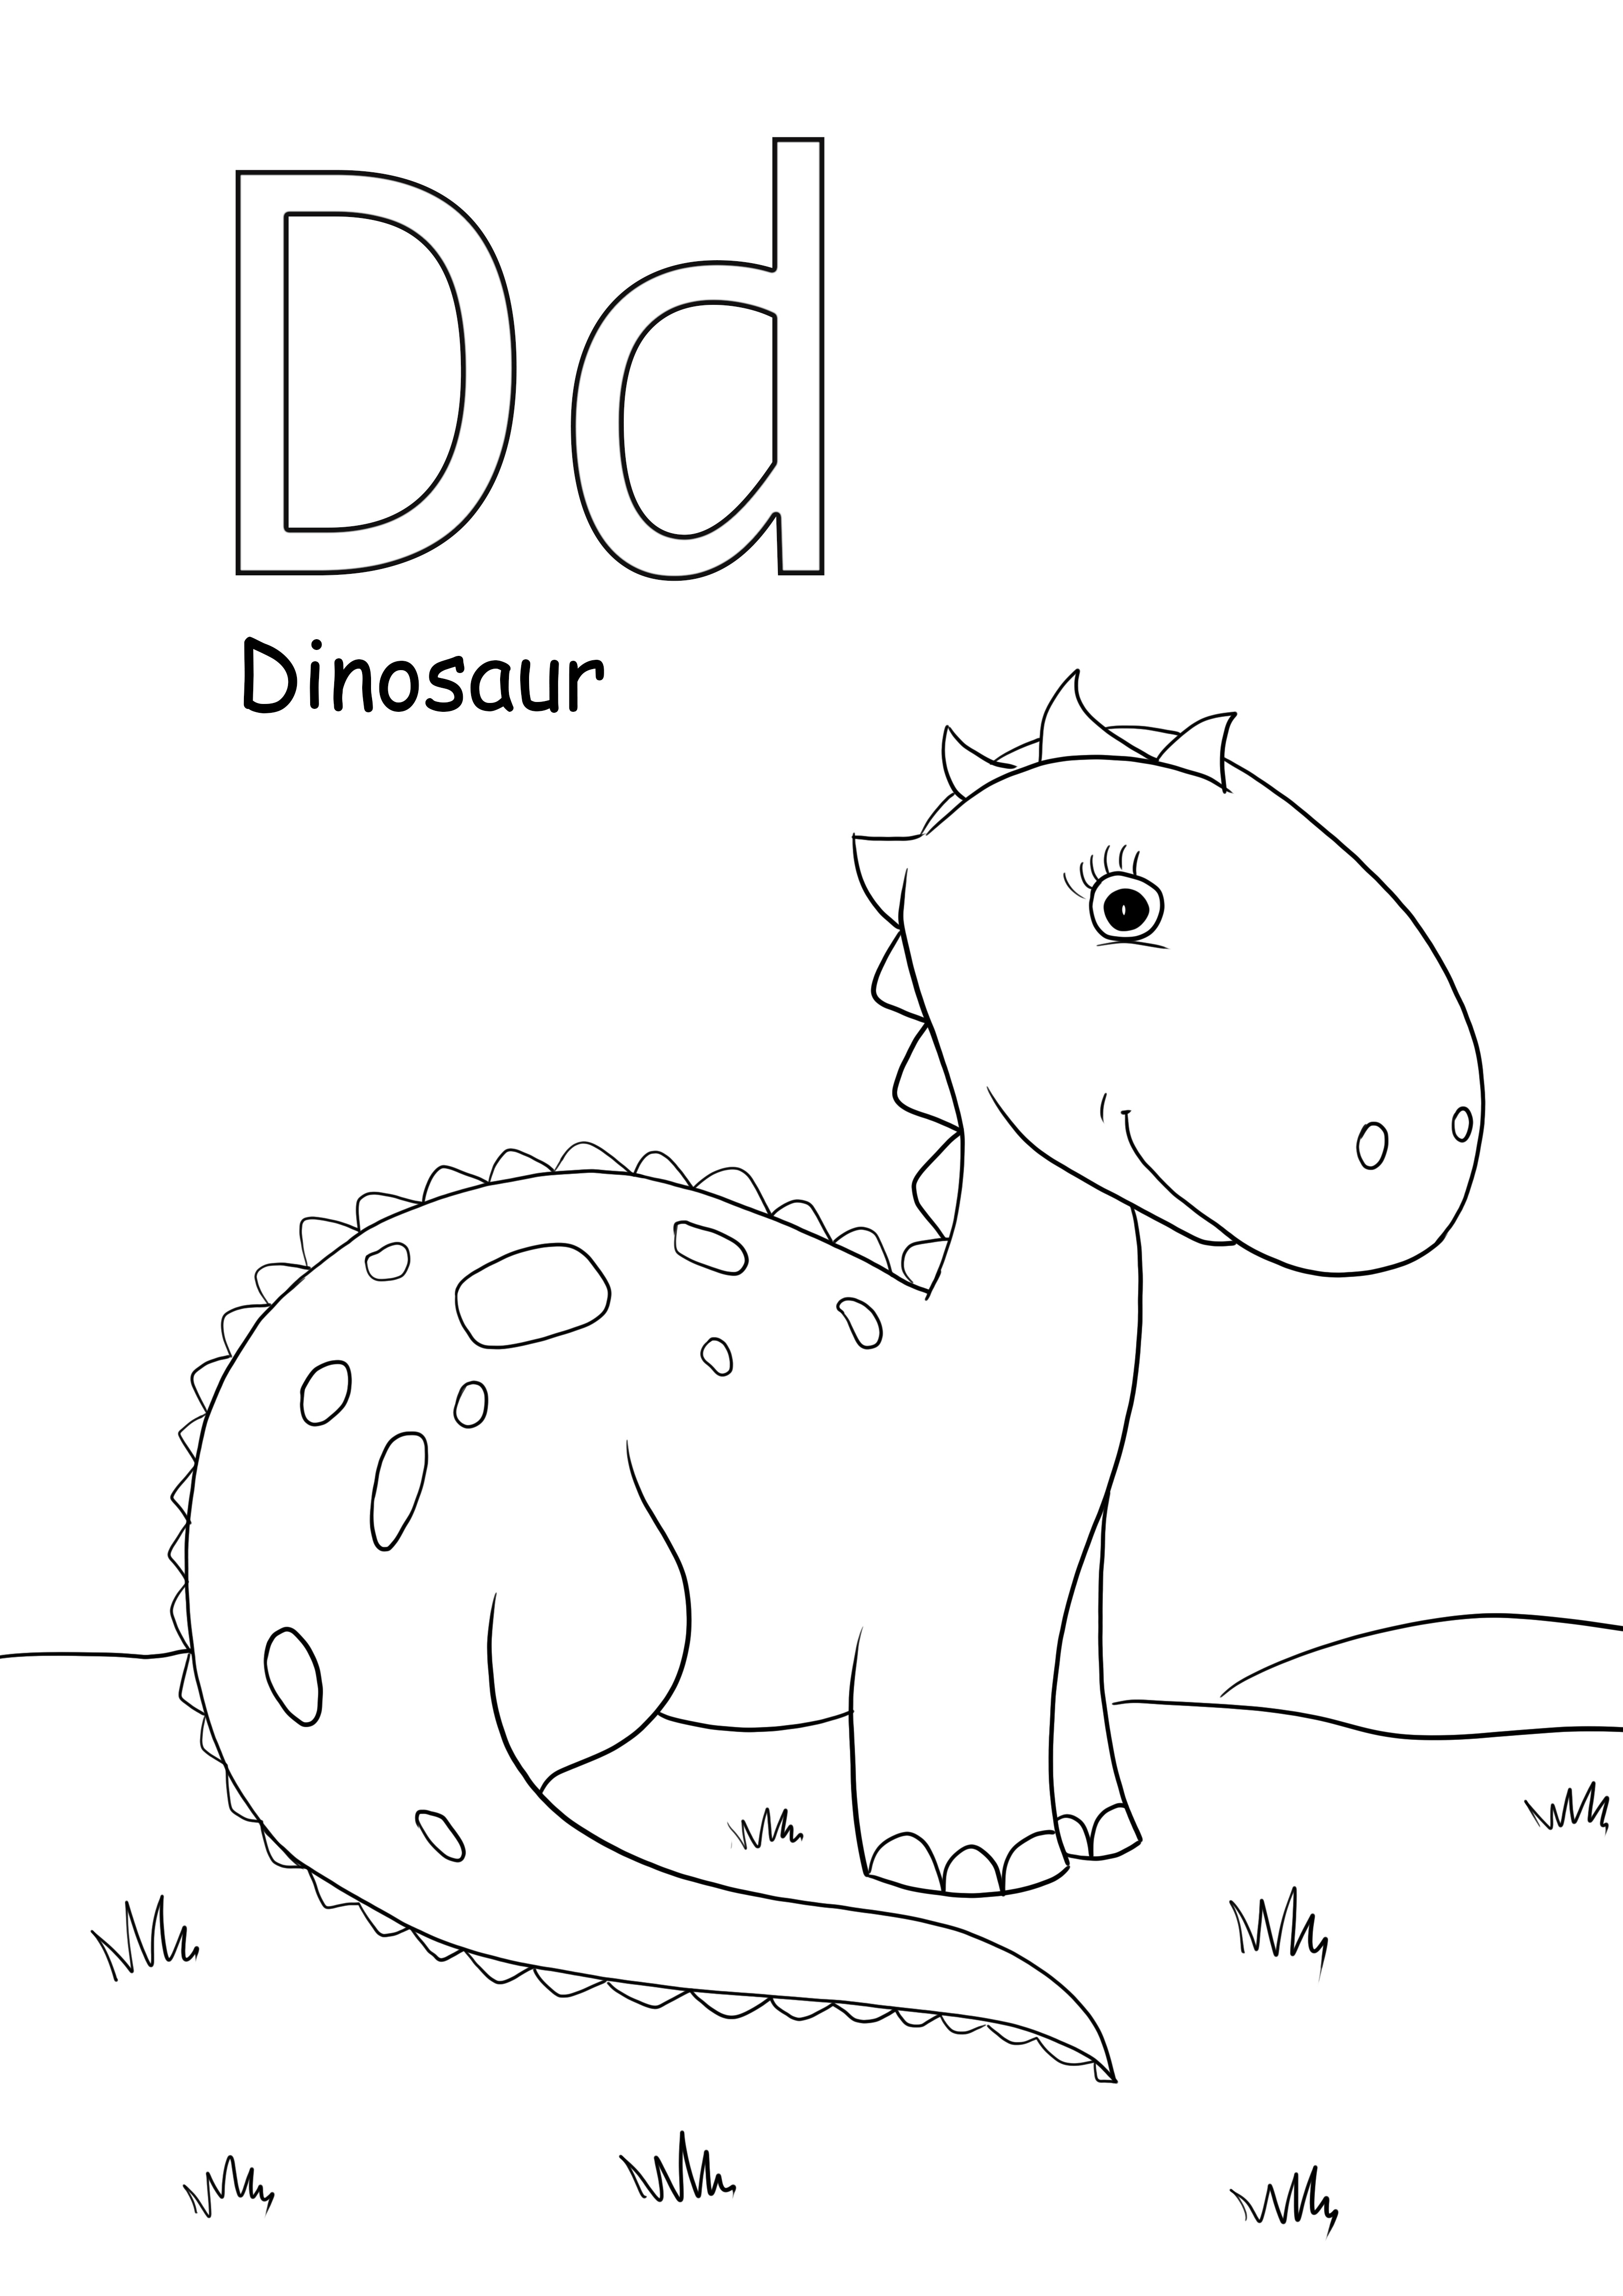 d é para imagens de colorir de dinossauros e é gratuito para imprimir